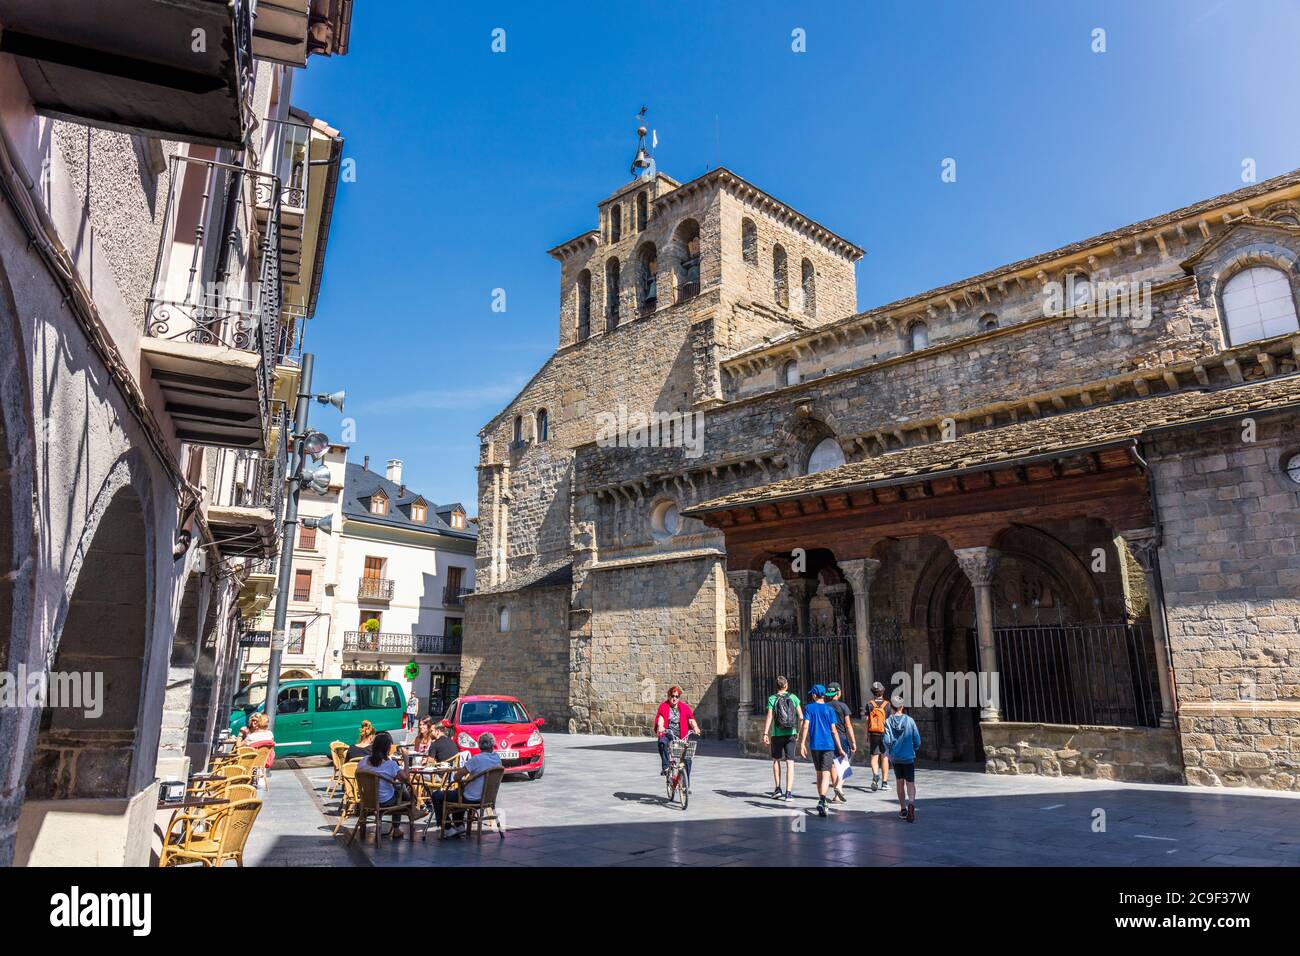 Jaca, province de Huesca, Aragon, Espagne. Cathédrale romane de San Pedro Apóstol. Cathédrale Saint-Pierre l'Apôtre. Le bâtiment qui était construit Banque D'Images